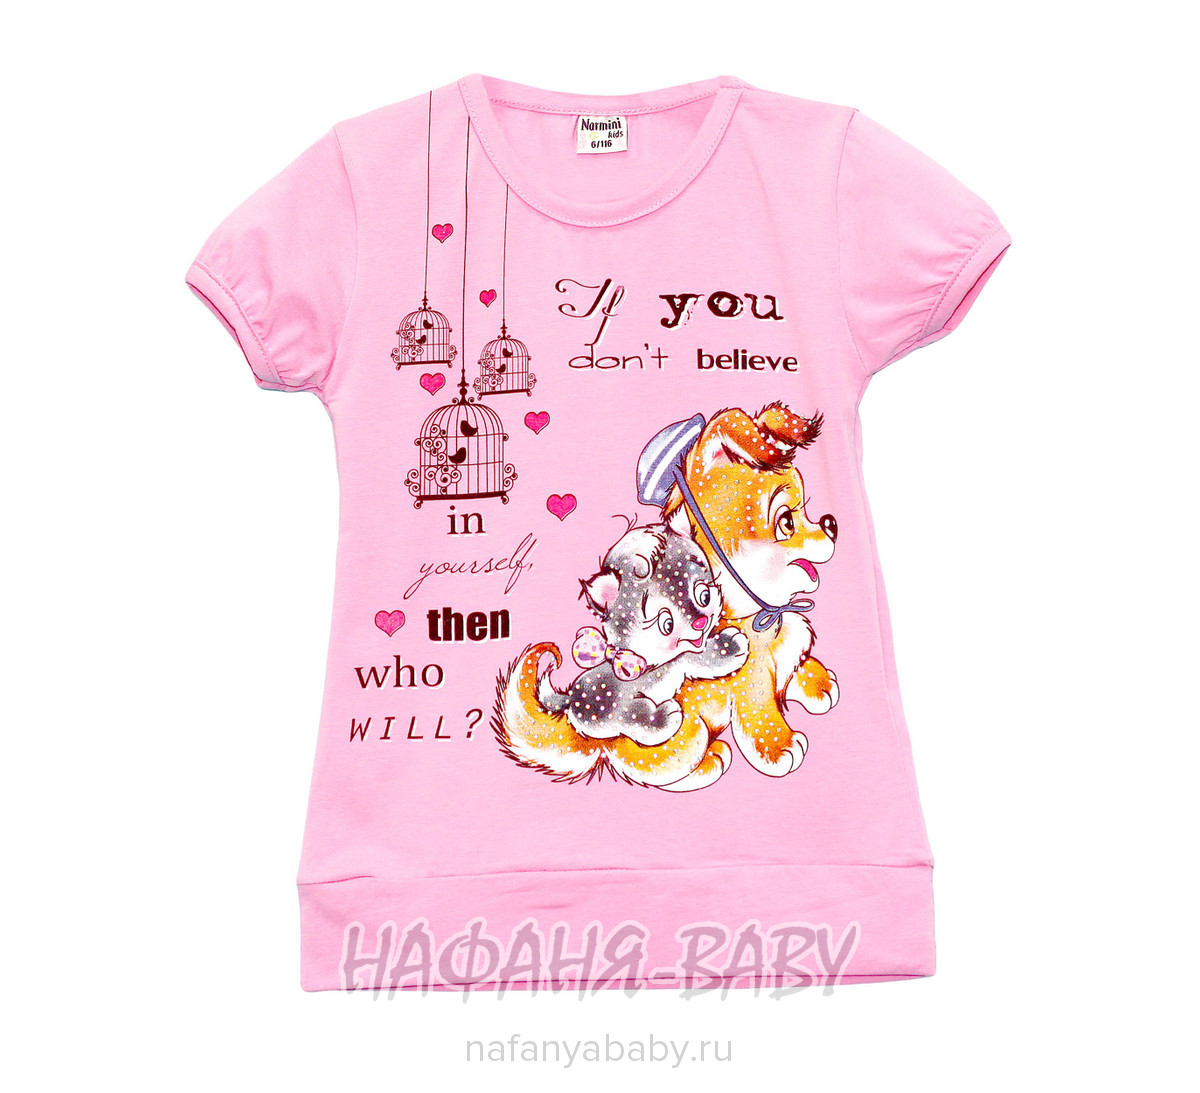 Детская футболка NARMINI арт: 5537, 1-4 года, 5-9 лет, цвет аквамариновый, оптом Турция